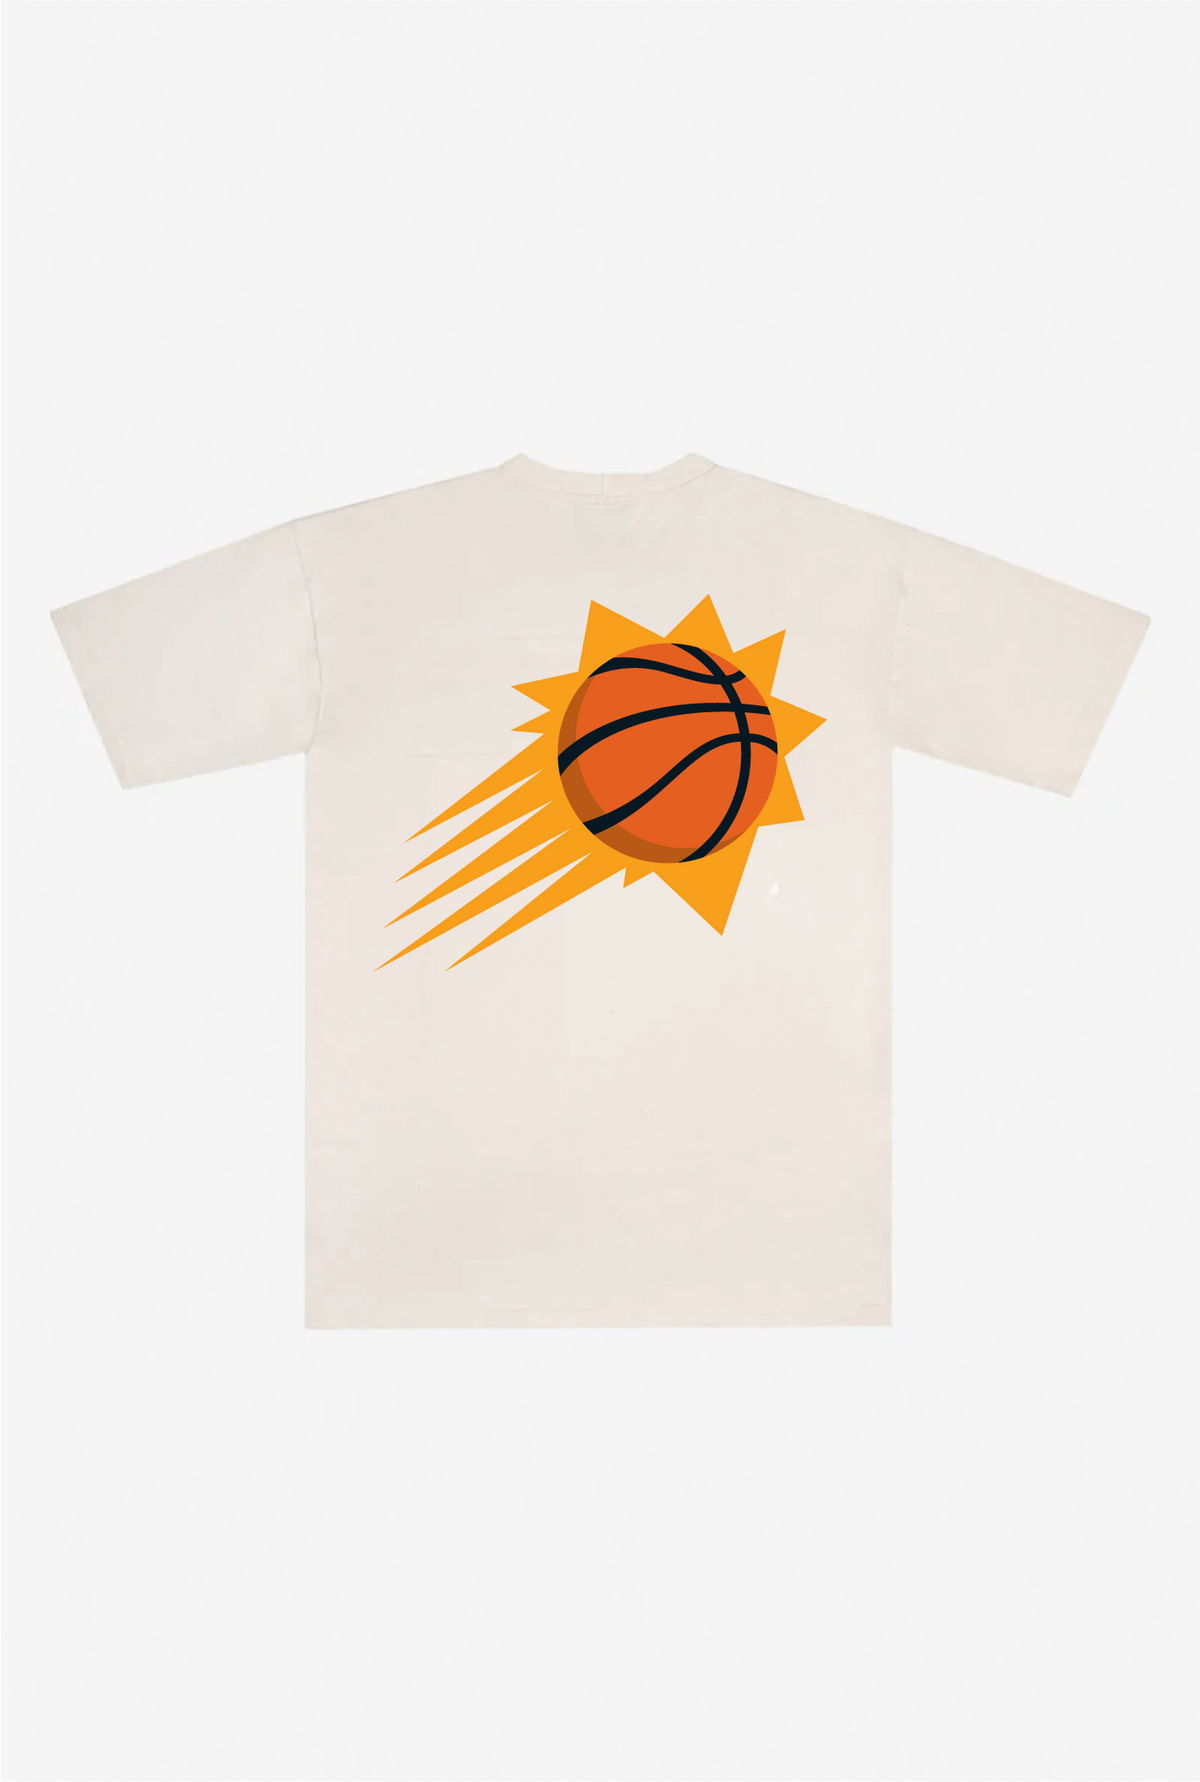 Phoenix Suns Heavyweight T-Shirt - Natural